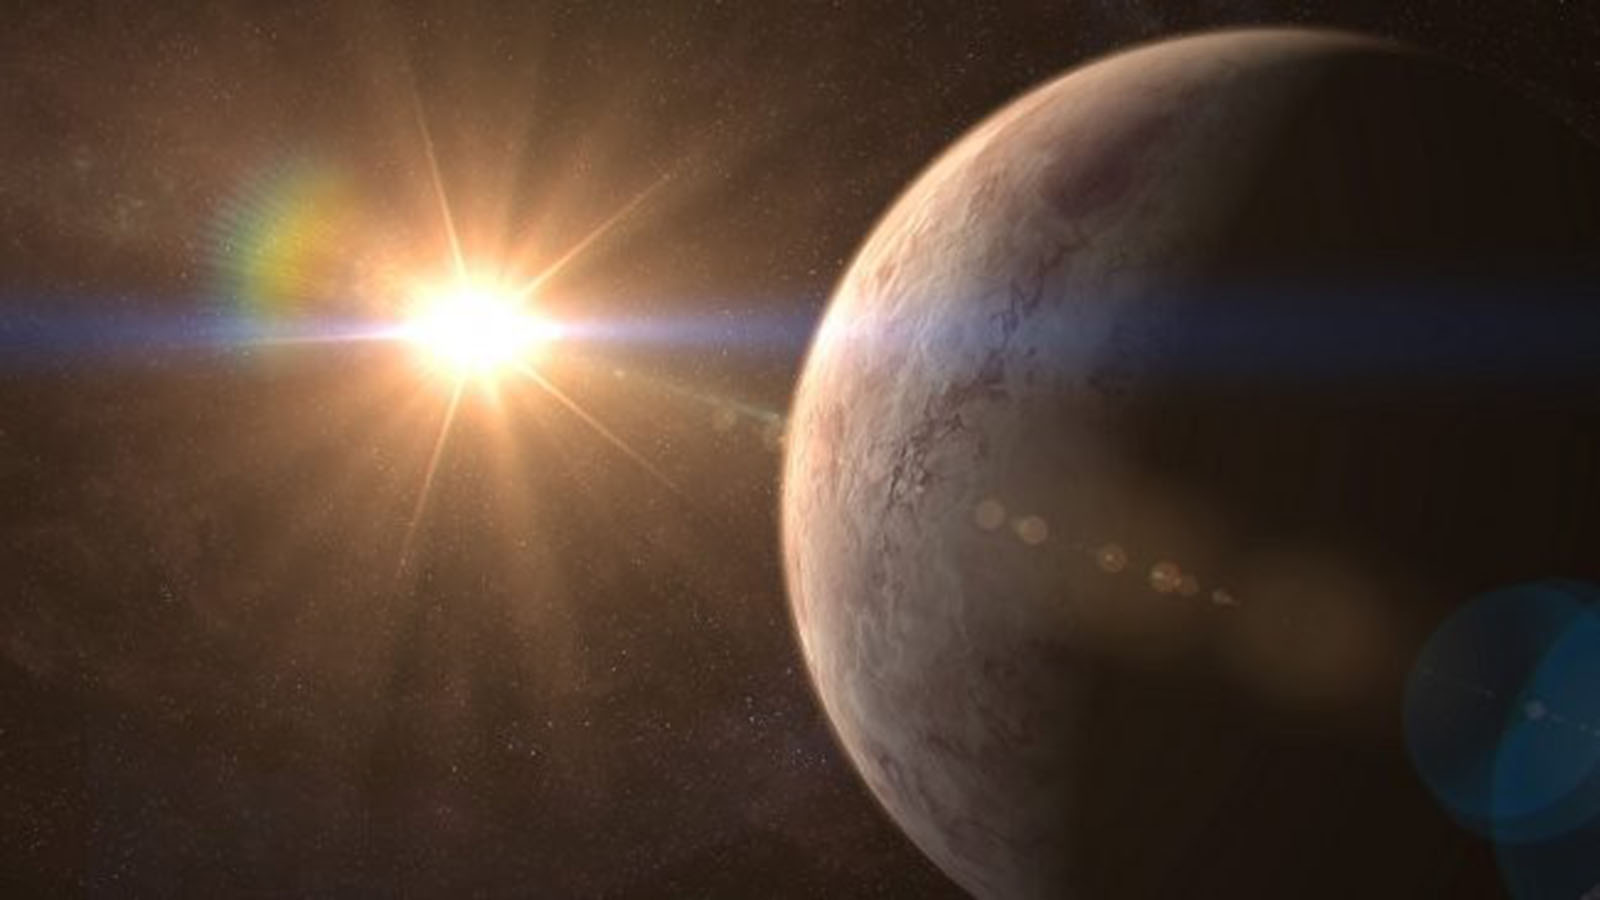 اكتشاف كواكب جديدة خارج مجموعتنا الشمسية